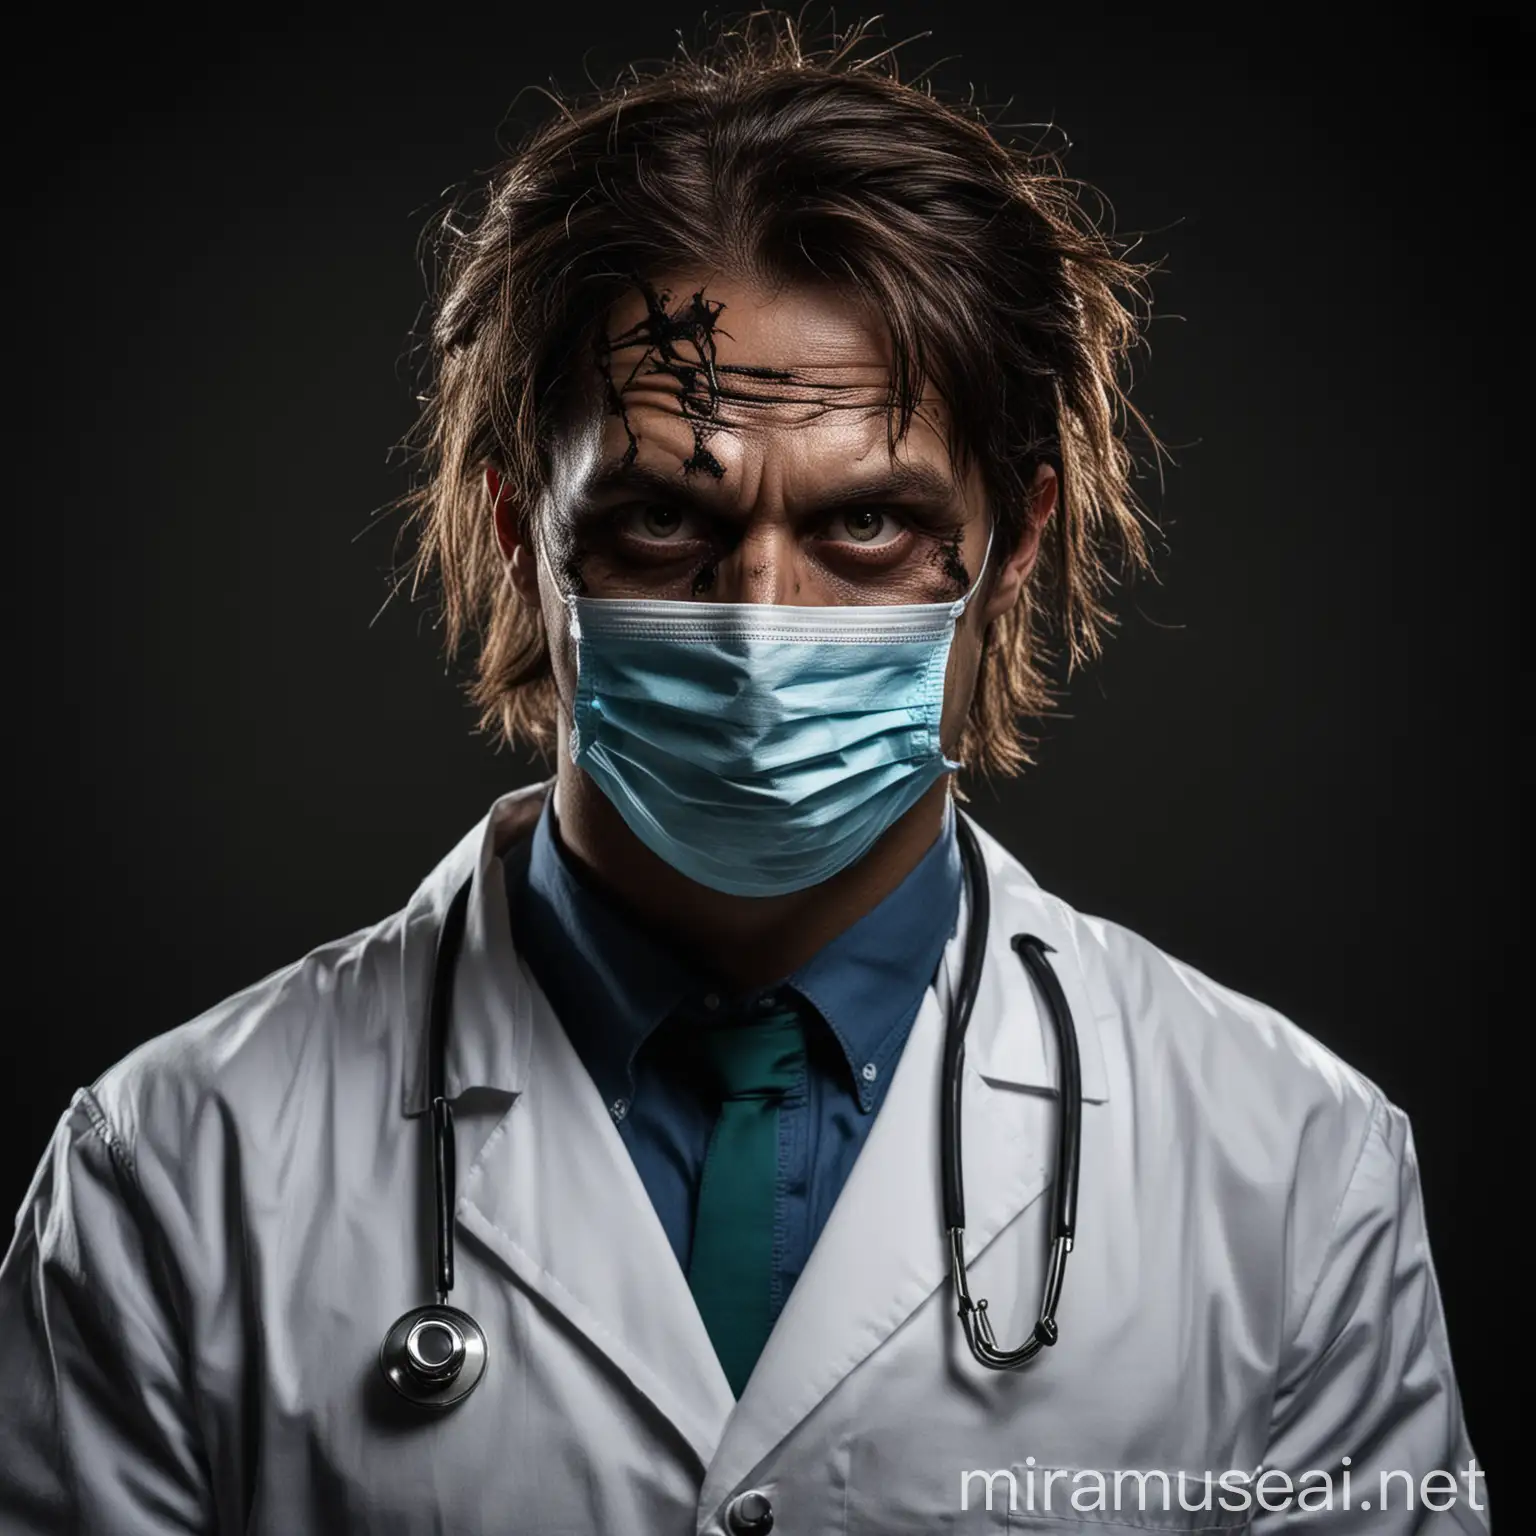 Sinister Doctor in Dark Medical Mask